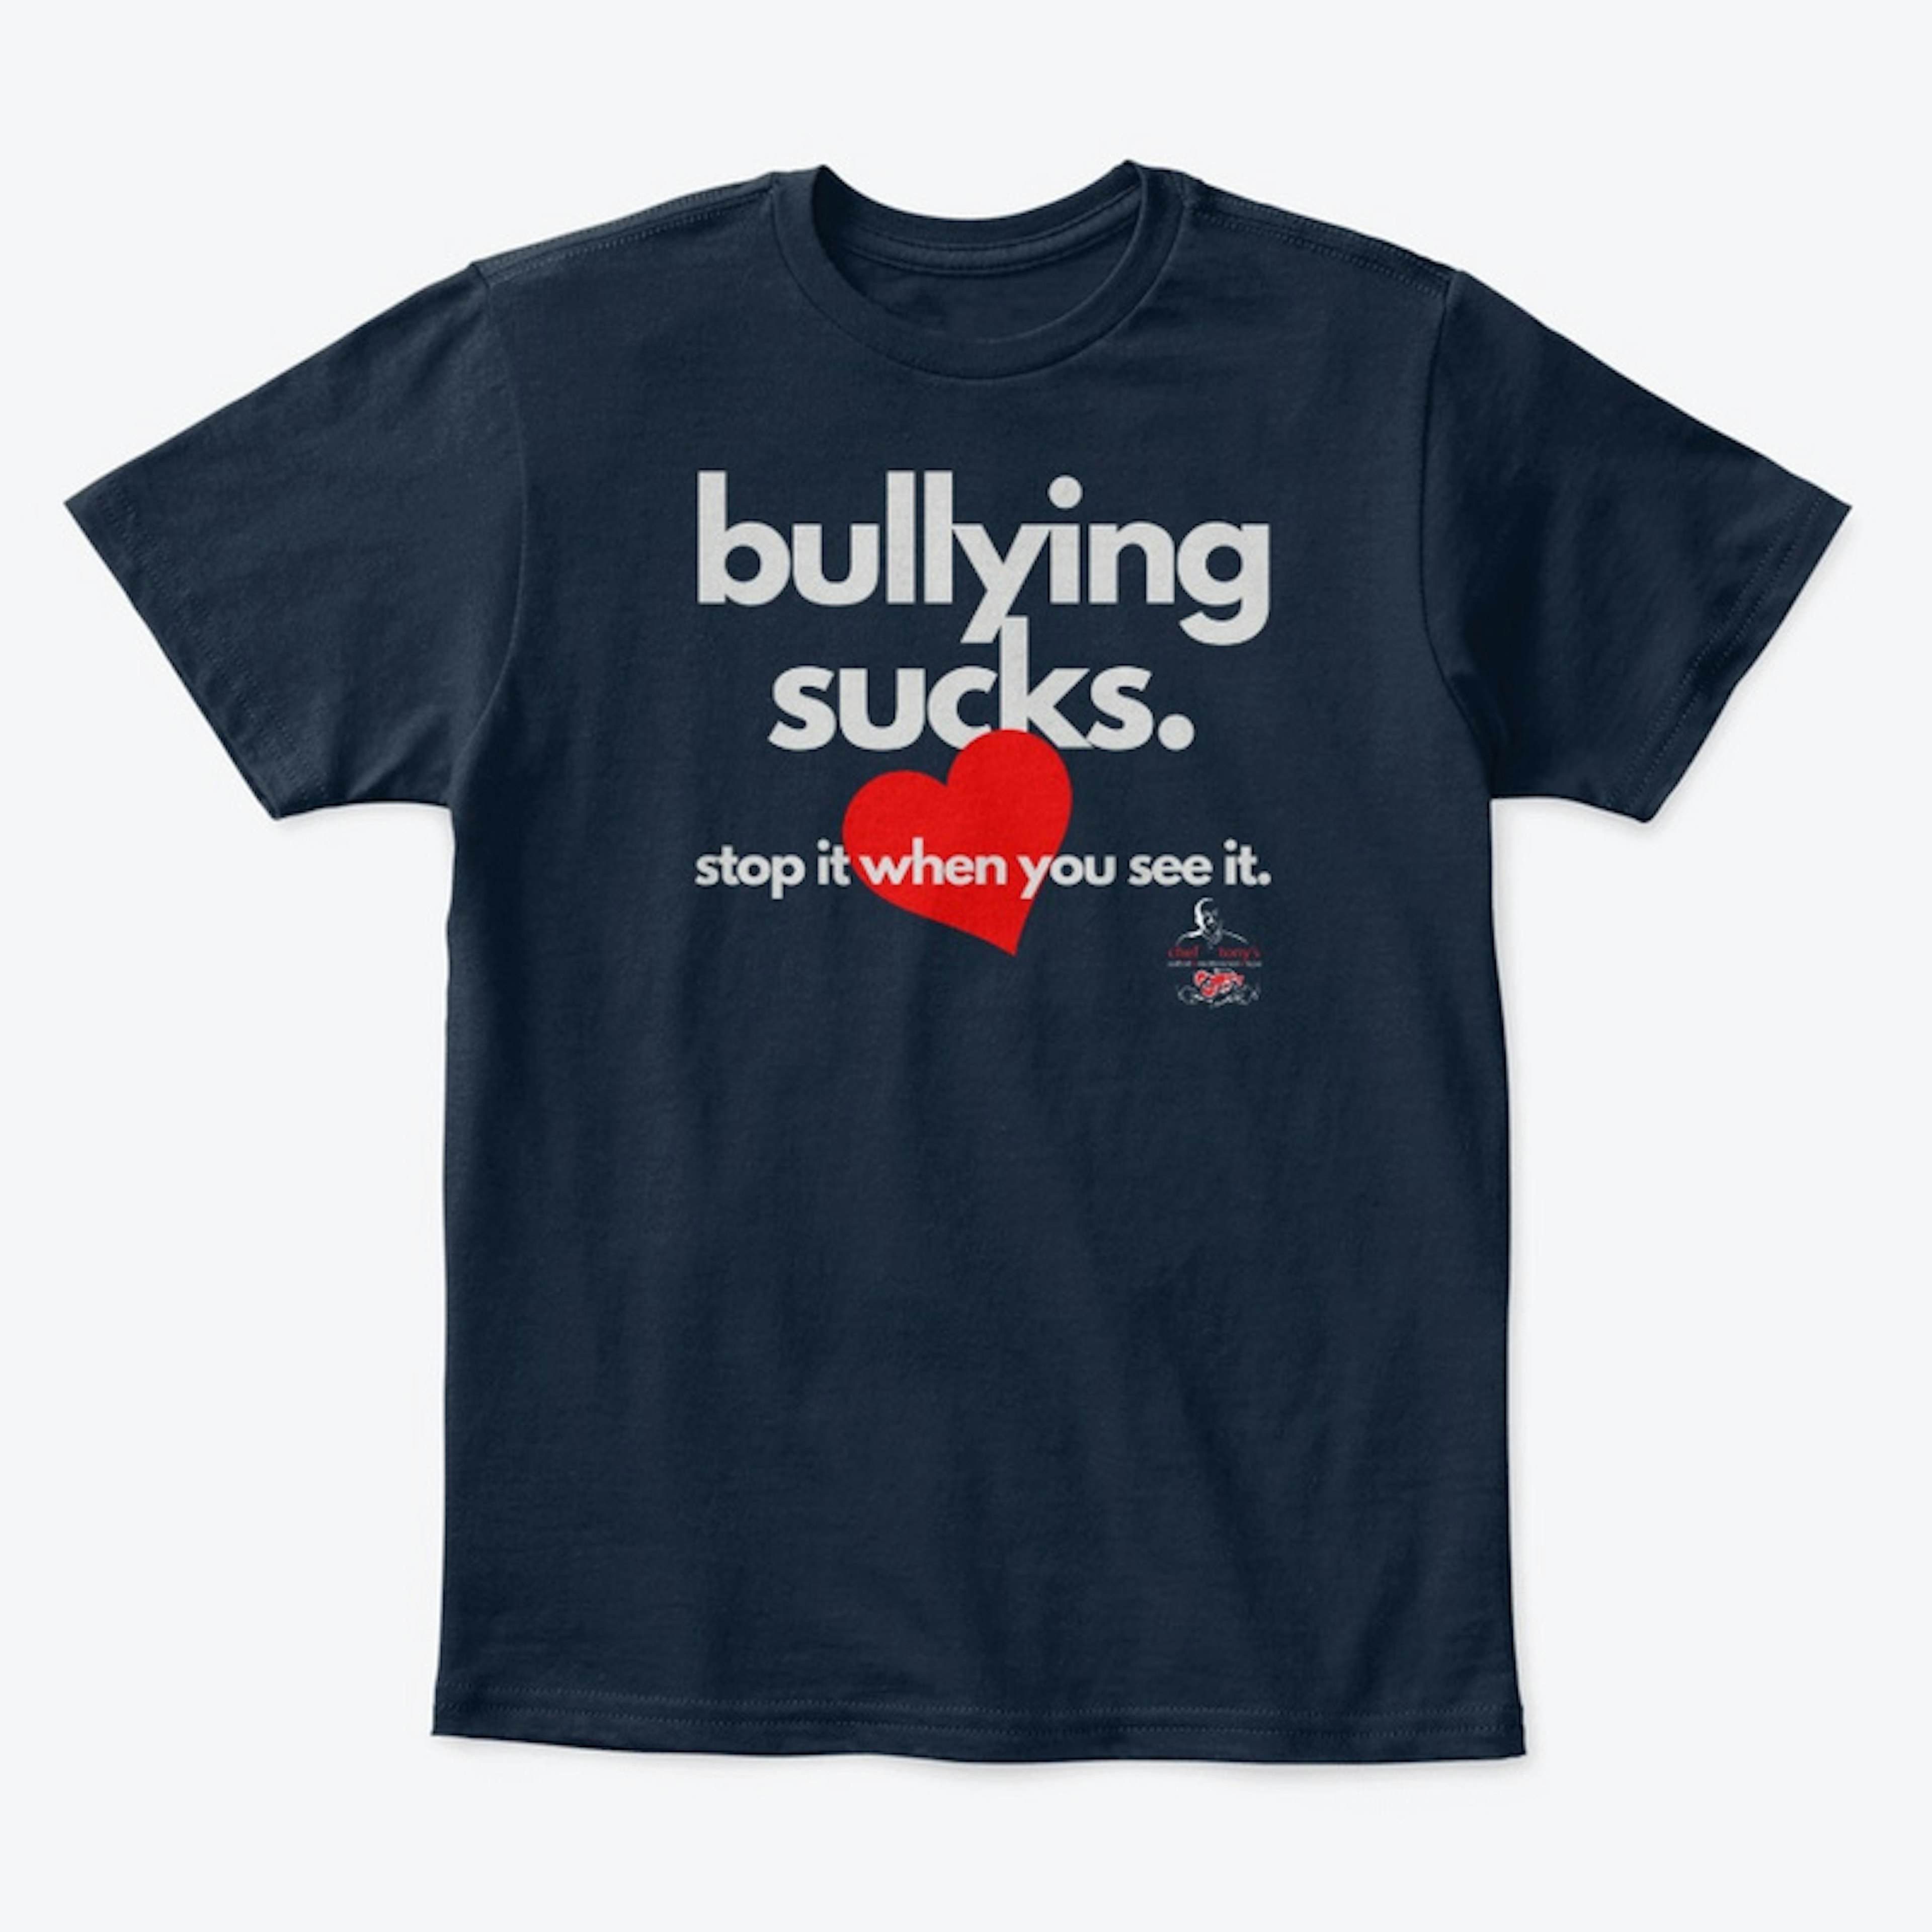 bullying sucks.